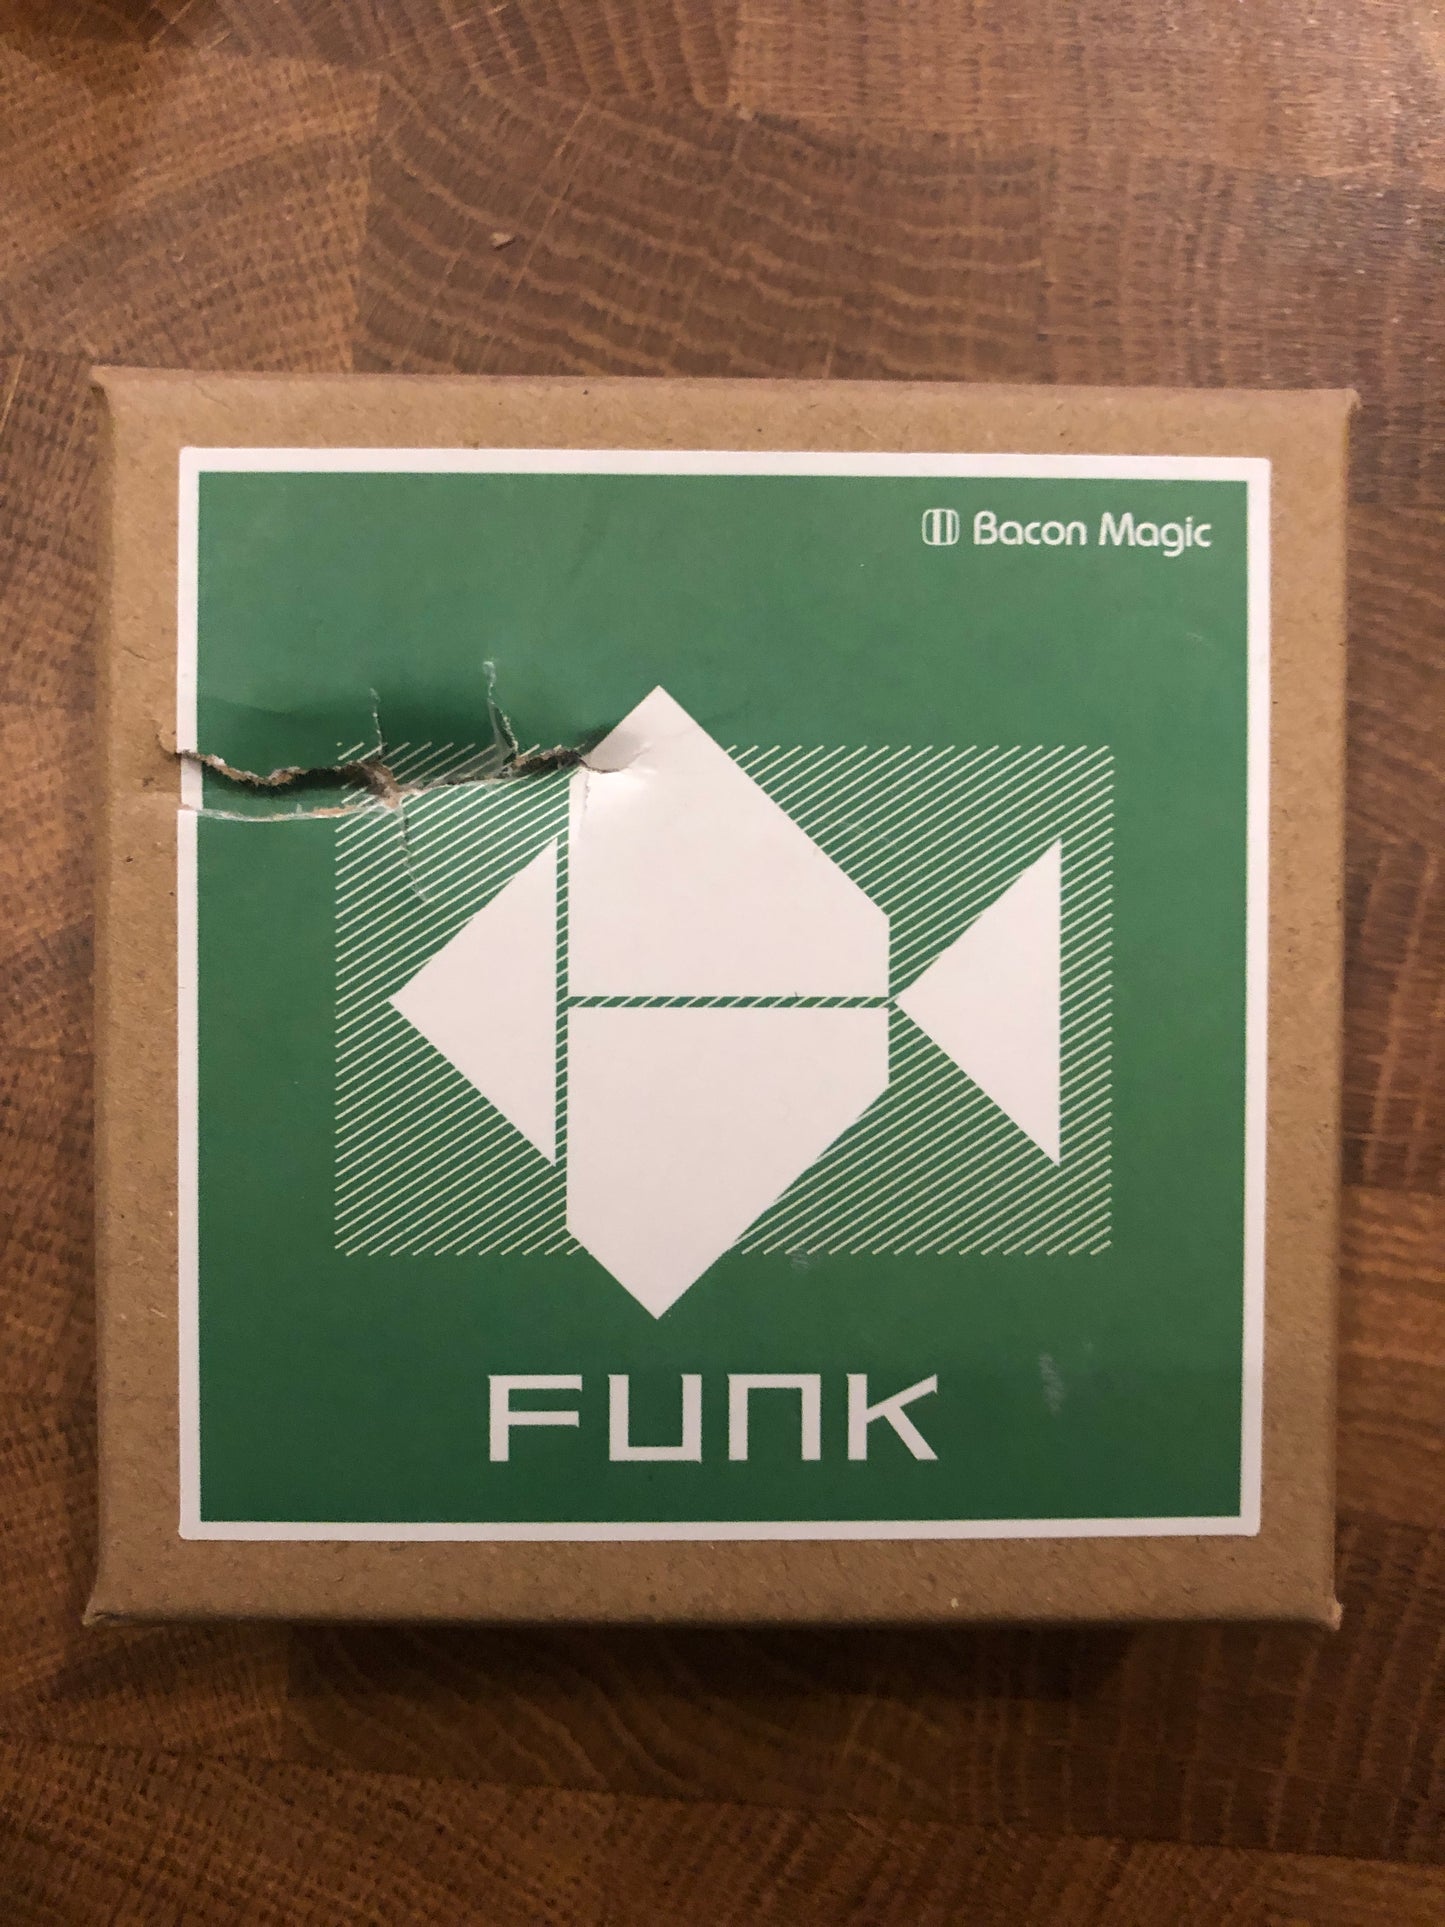 FUNK Acrylic Puzzle - Bacon Magic (SM3)